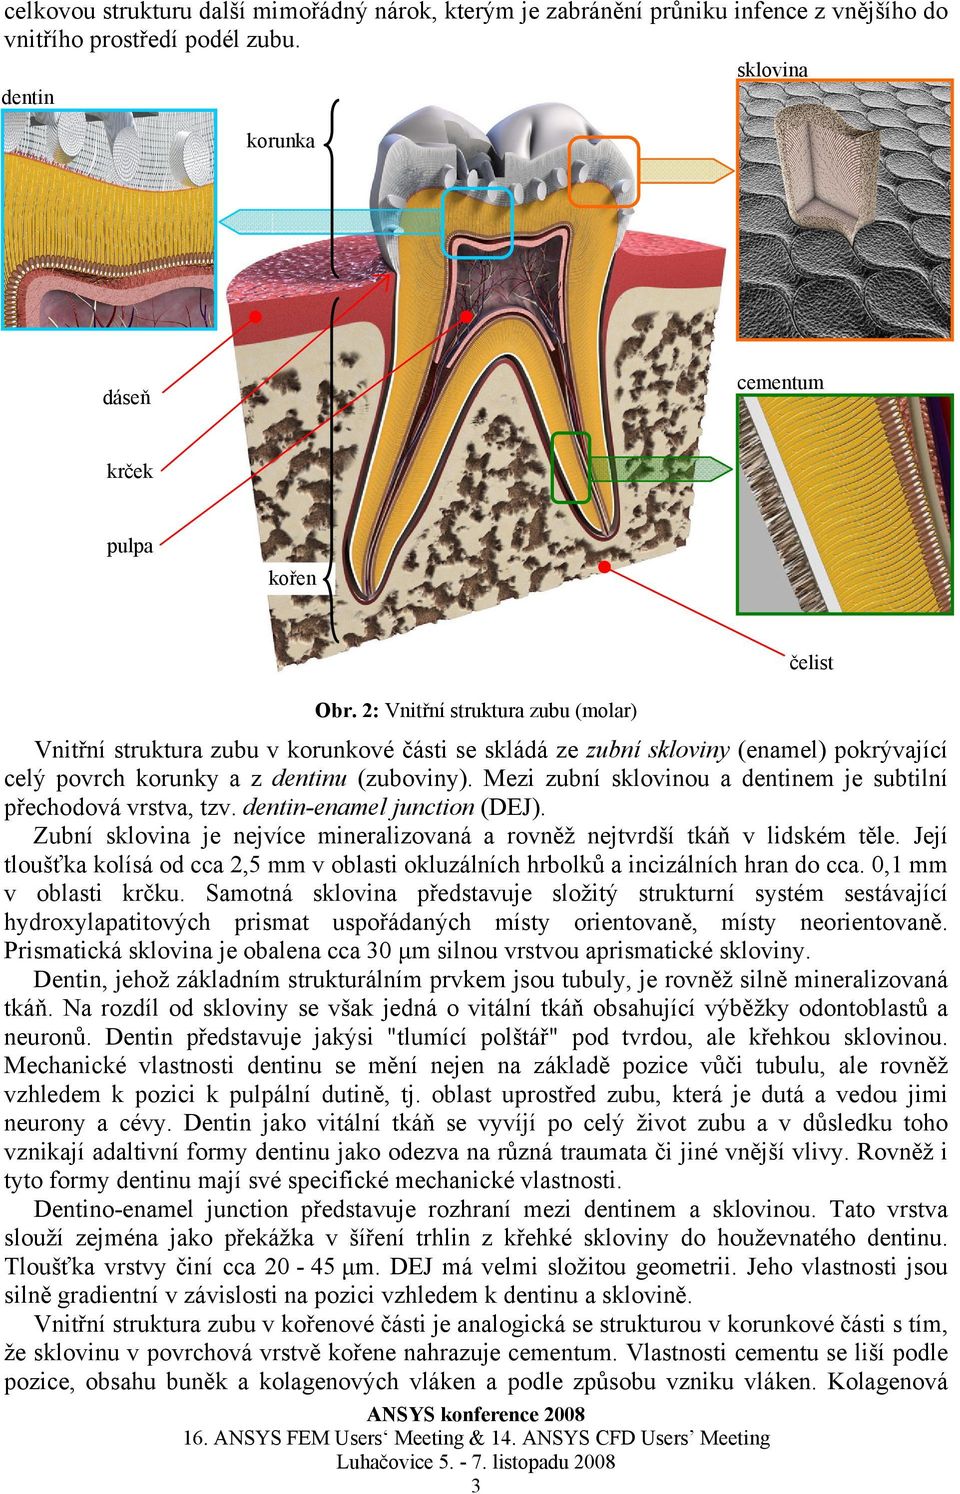 Mezi zubní sklovinou a dentinem je subtilní přechodová vrstva, tzv. dentin-enamel junction (DEJ). Zubní sklovina je nejvíce mineralizovaná a rovněž nejtvrdší tkáň v lidském těle.